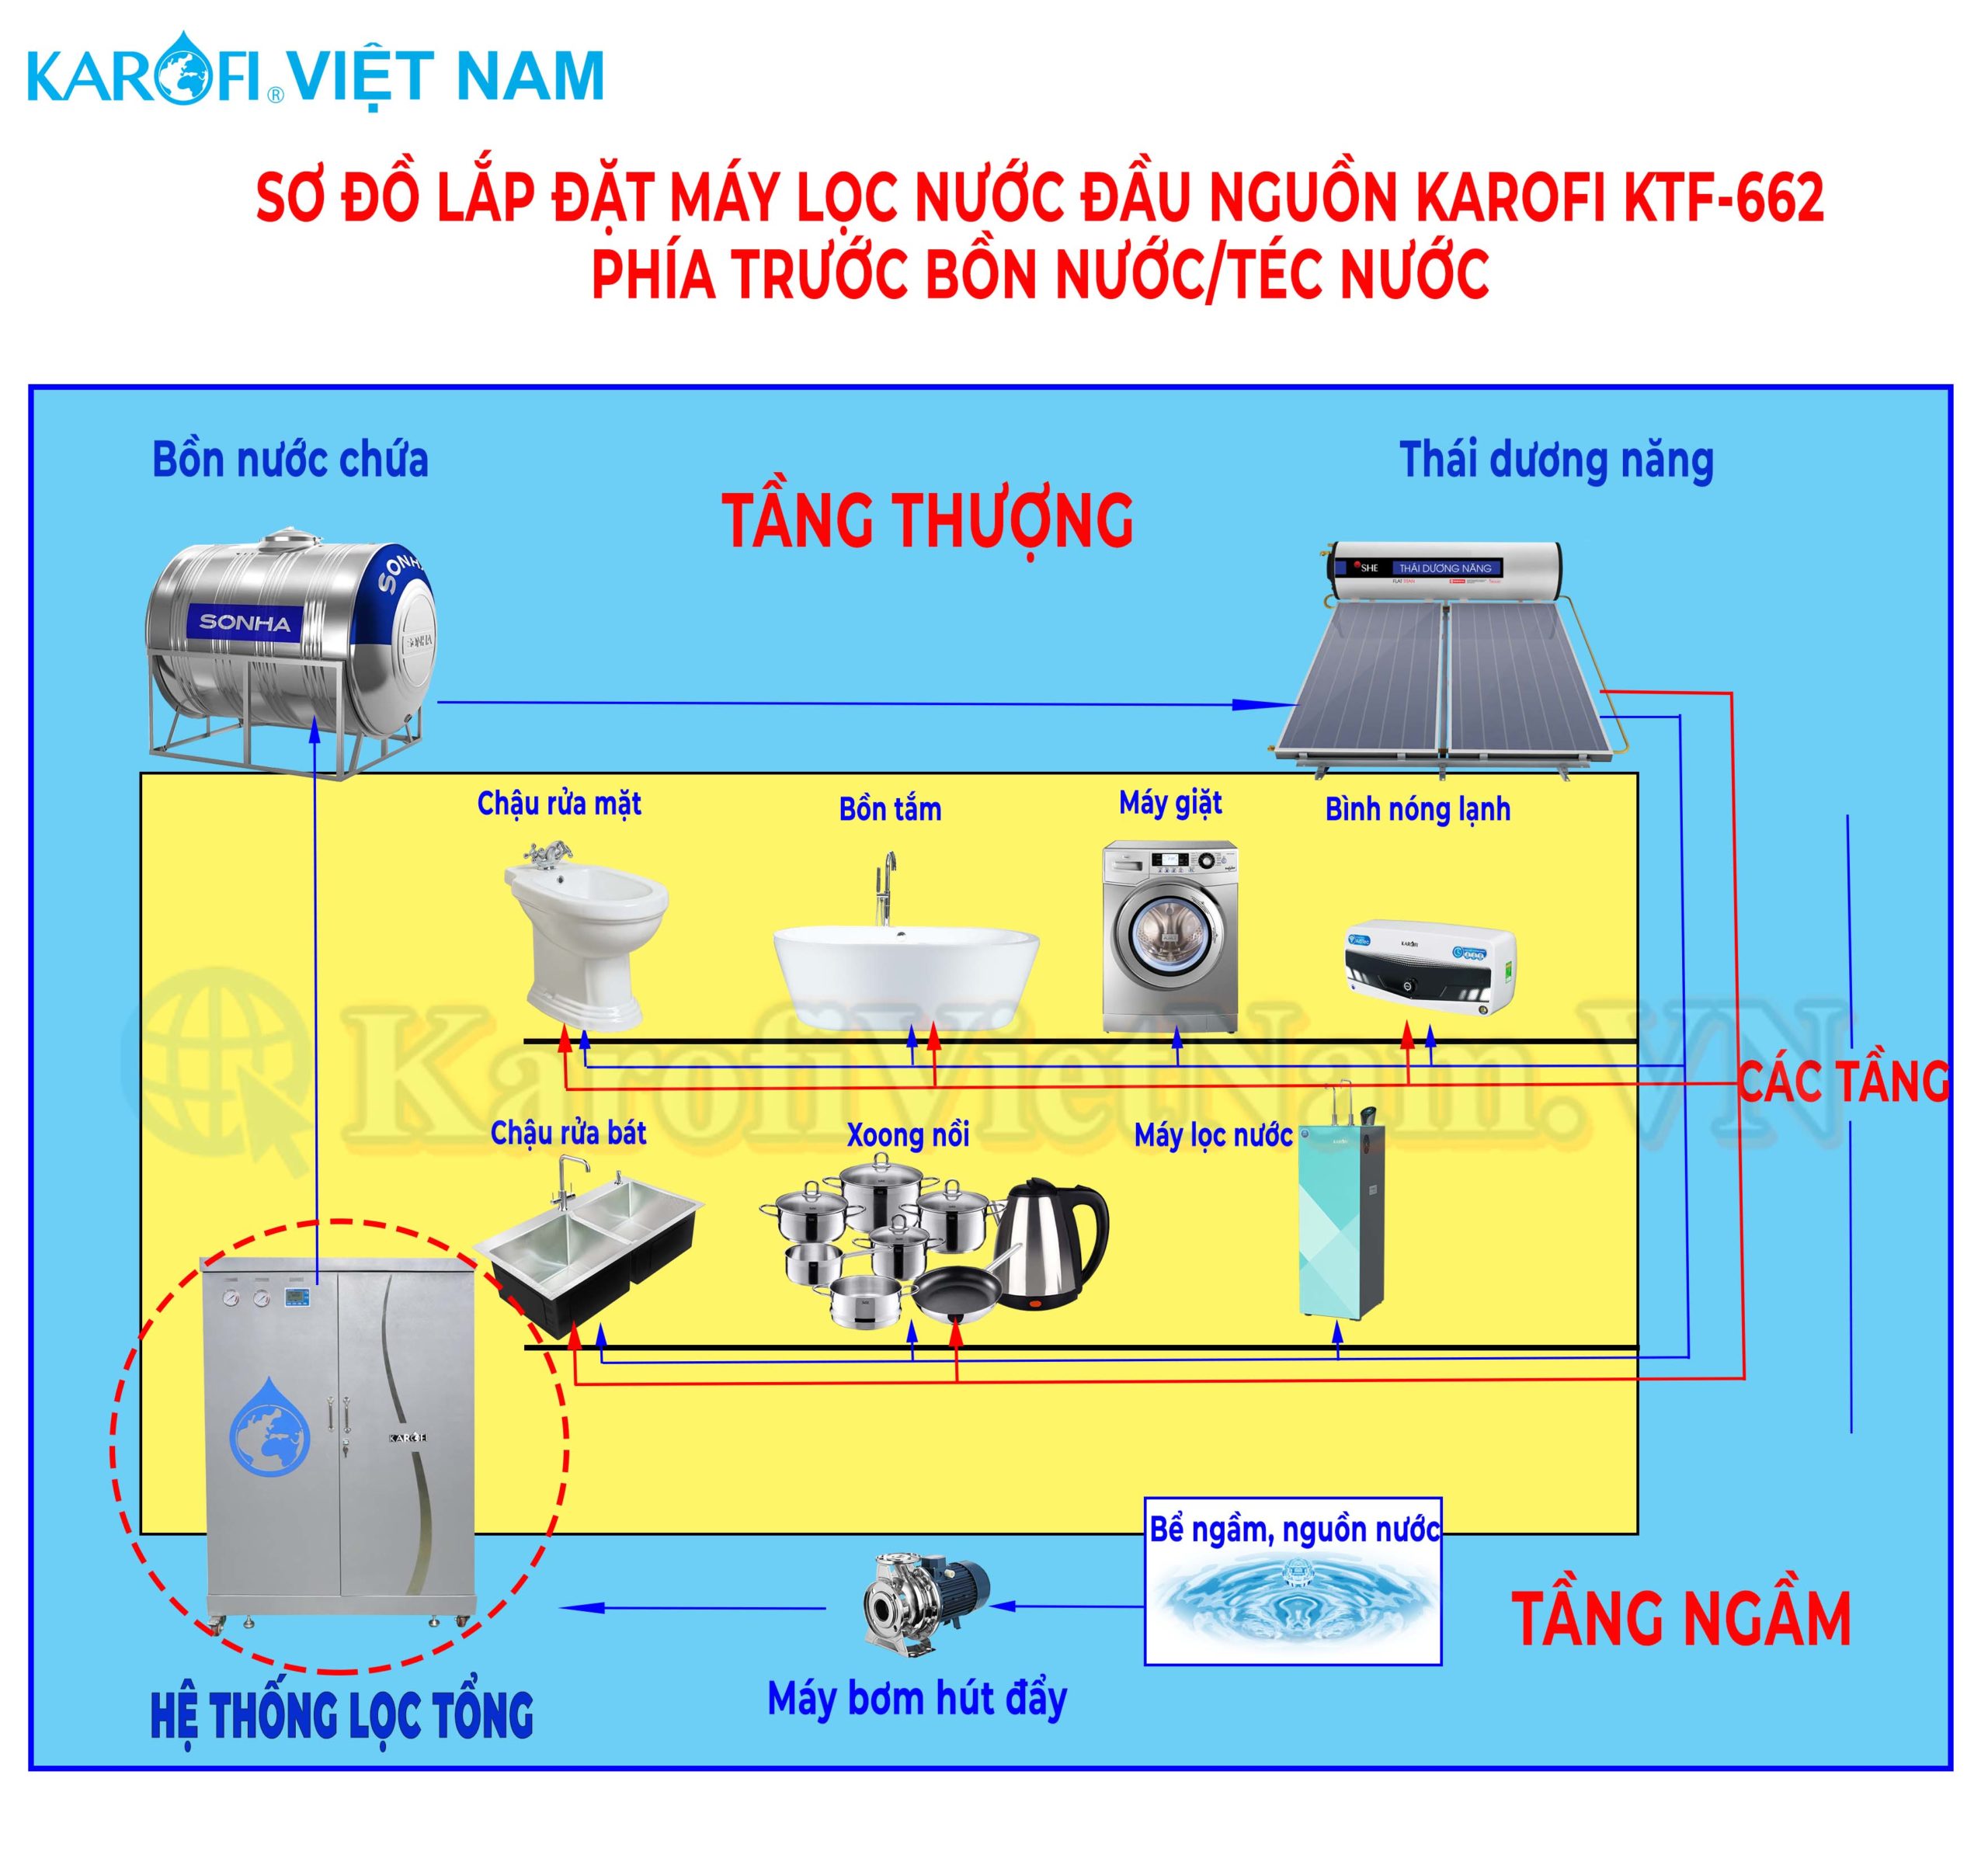 Sơ đồ lắp đặt Máy lọc nước đầu nguồn Karofi KTF-662 phía trước bồn nước